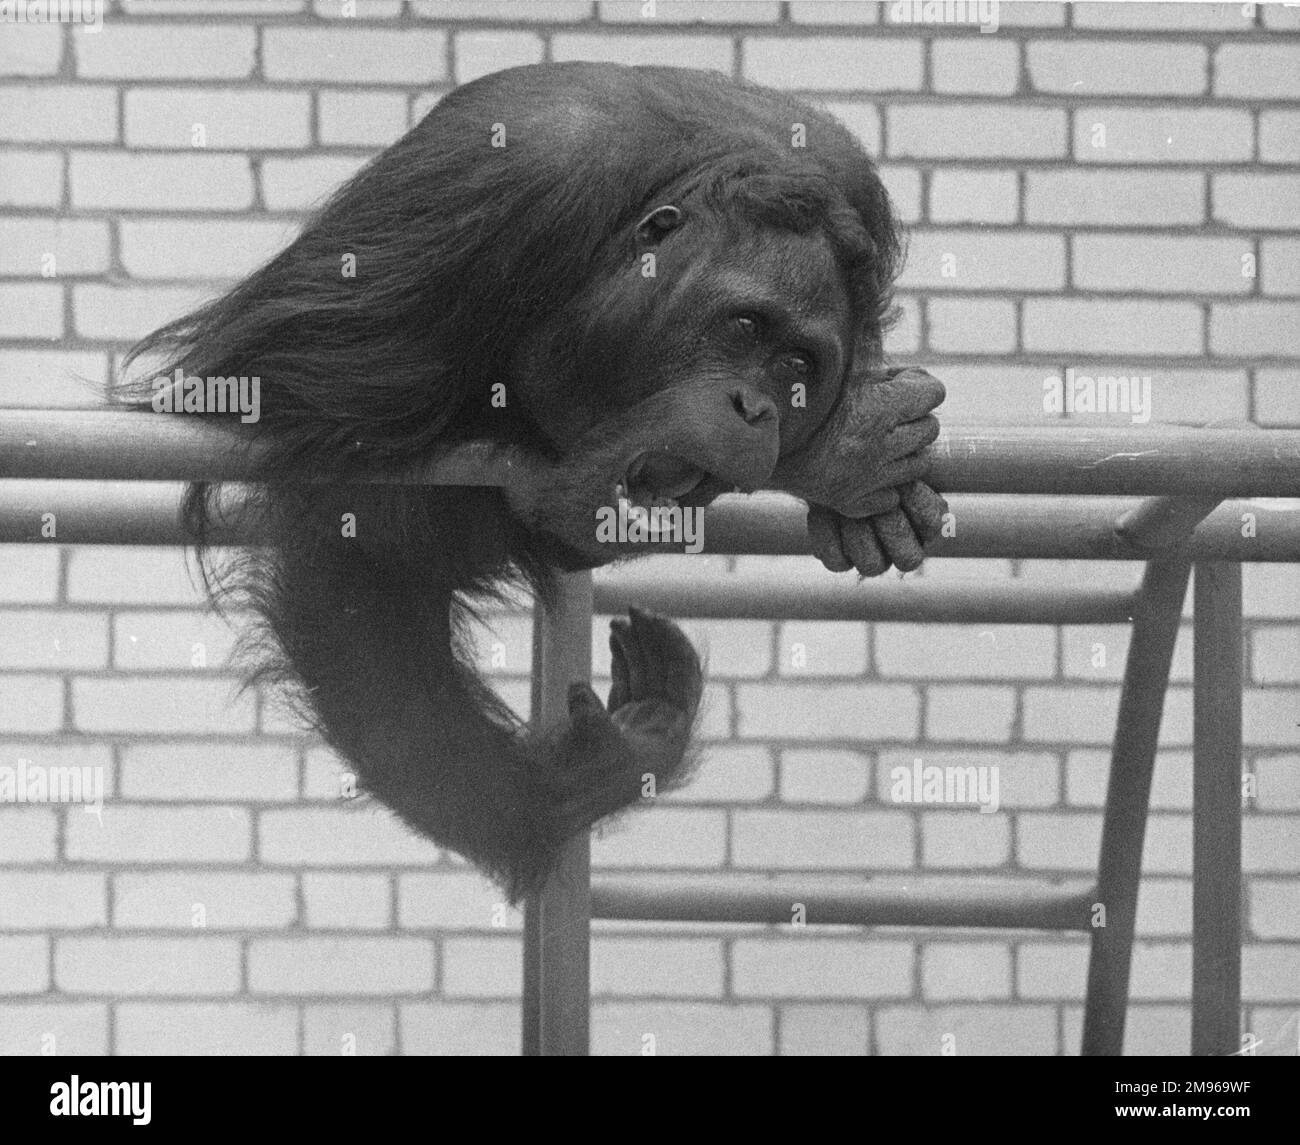 Un utan orang seduto sul suo persico nello zoo. Con l'espressione feroce sul suo volto sembra essere infastidito o sconvolto di qualcosa. Foto Stock